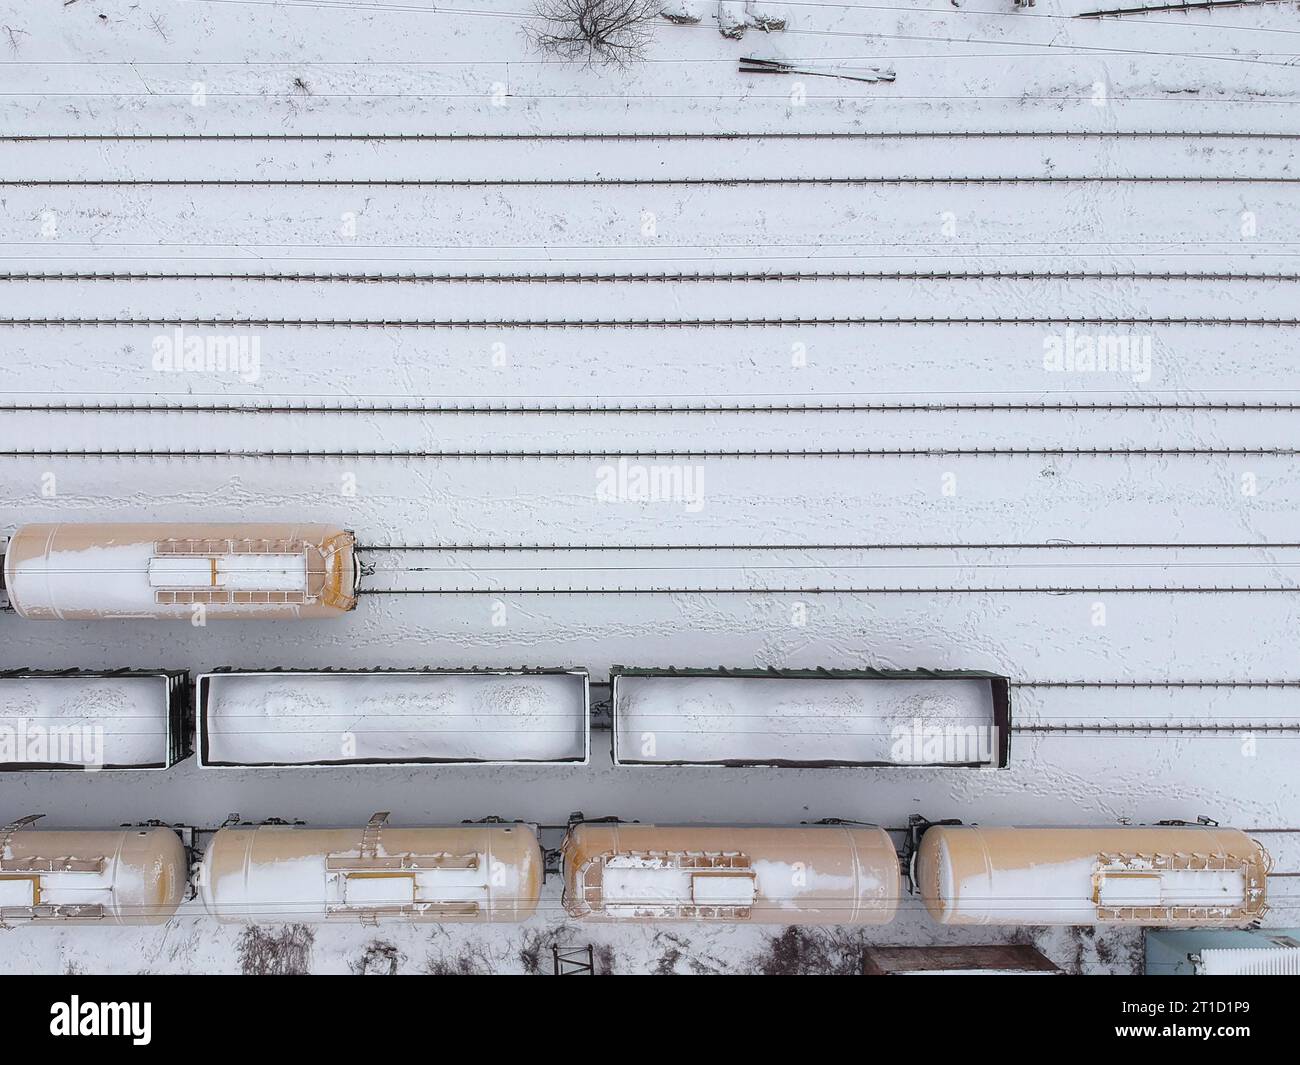 Veduta aerea di un treno merci in WER . Treni merci coperti di neve sulla stazione ferroviaria. Industria pesante. Niente persone. Foto Stock